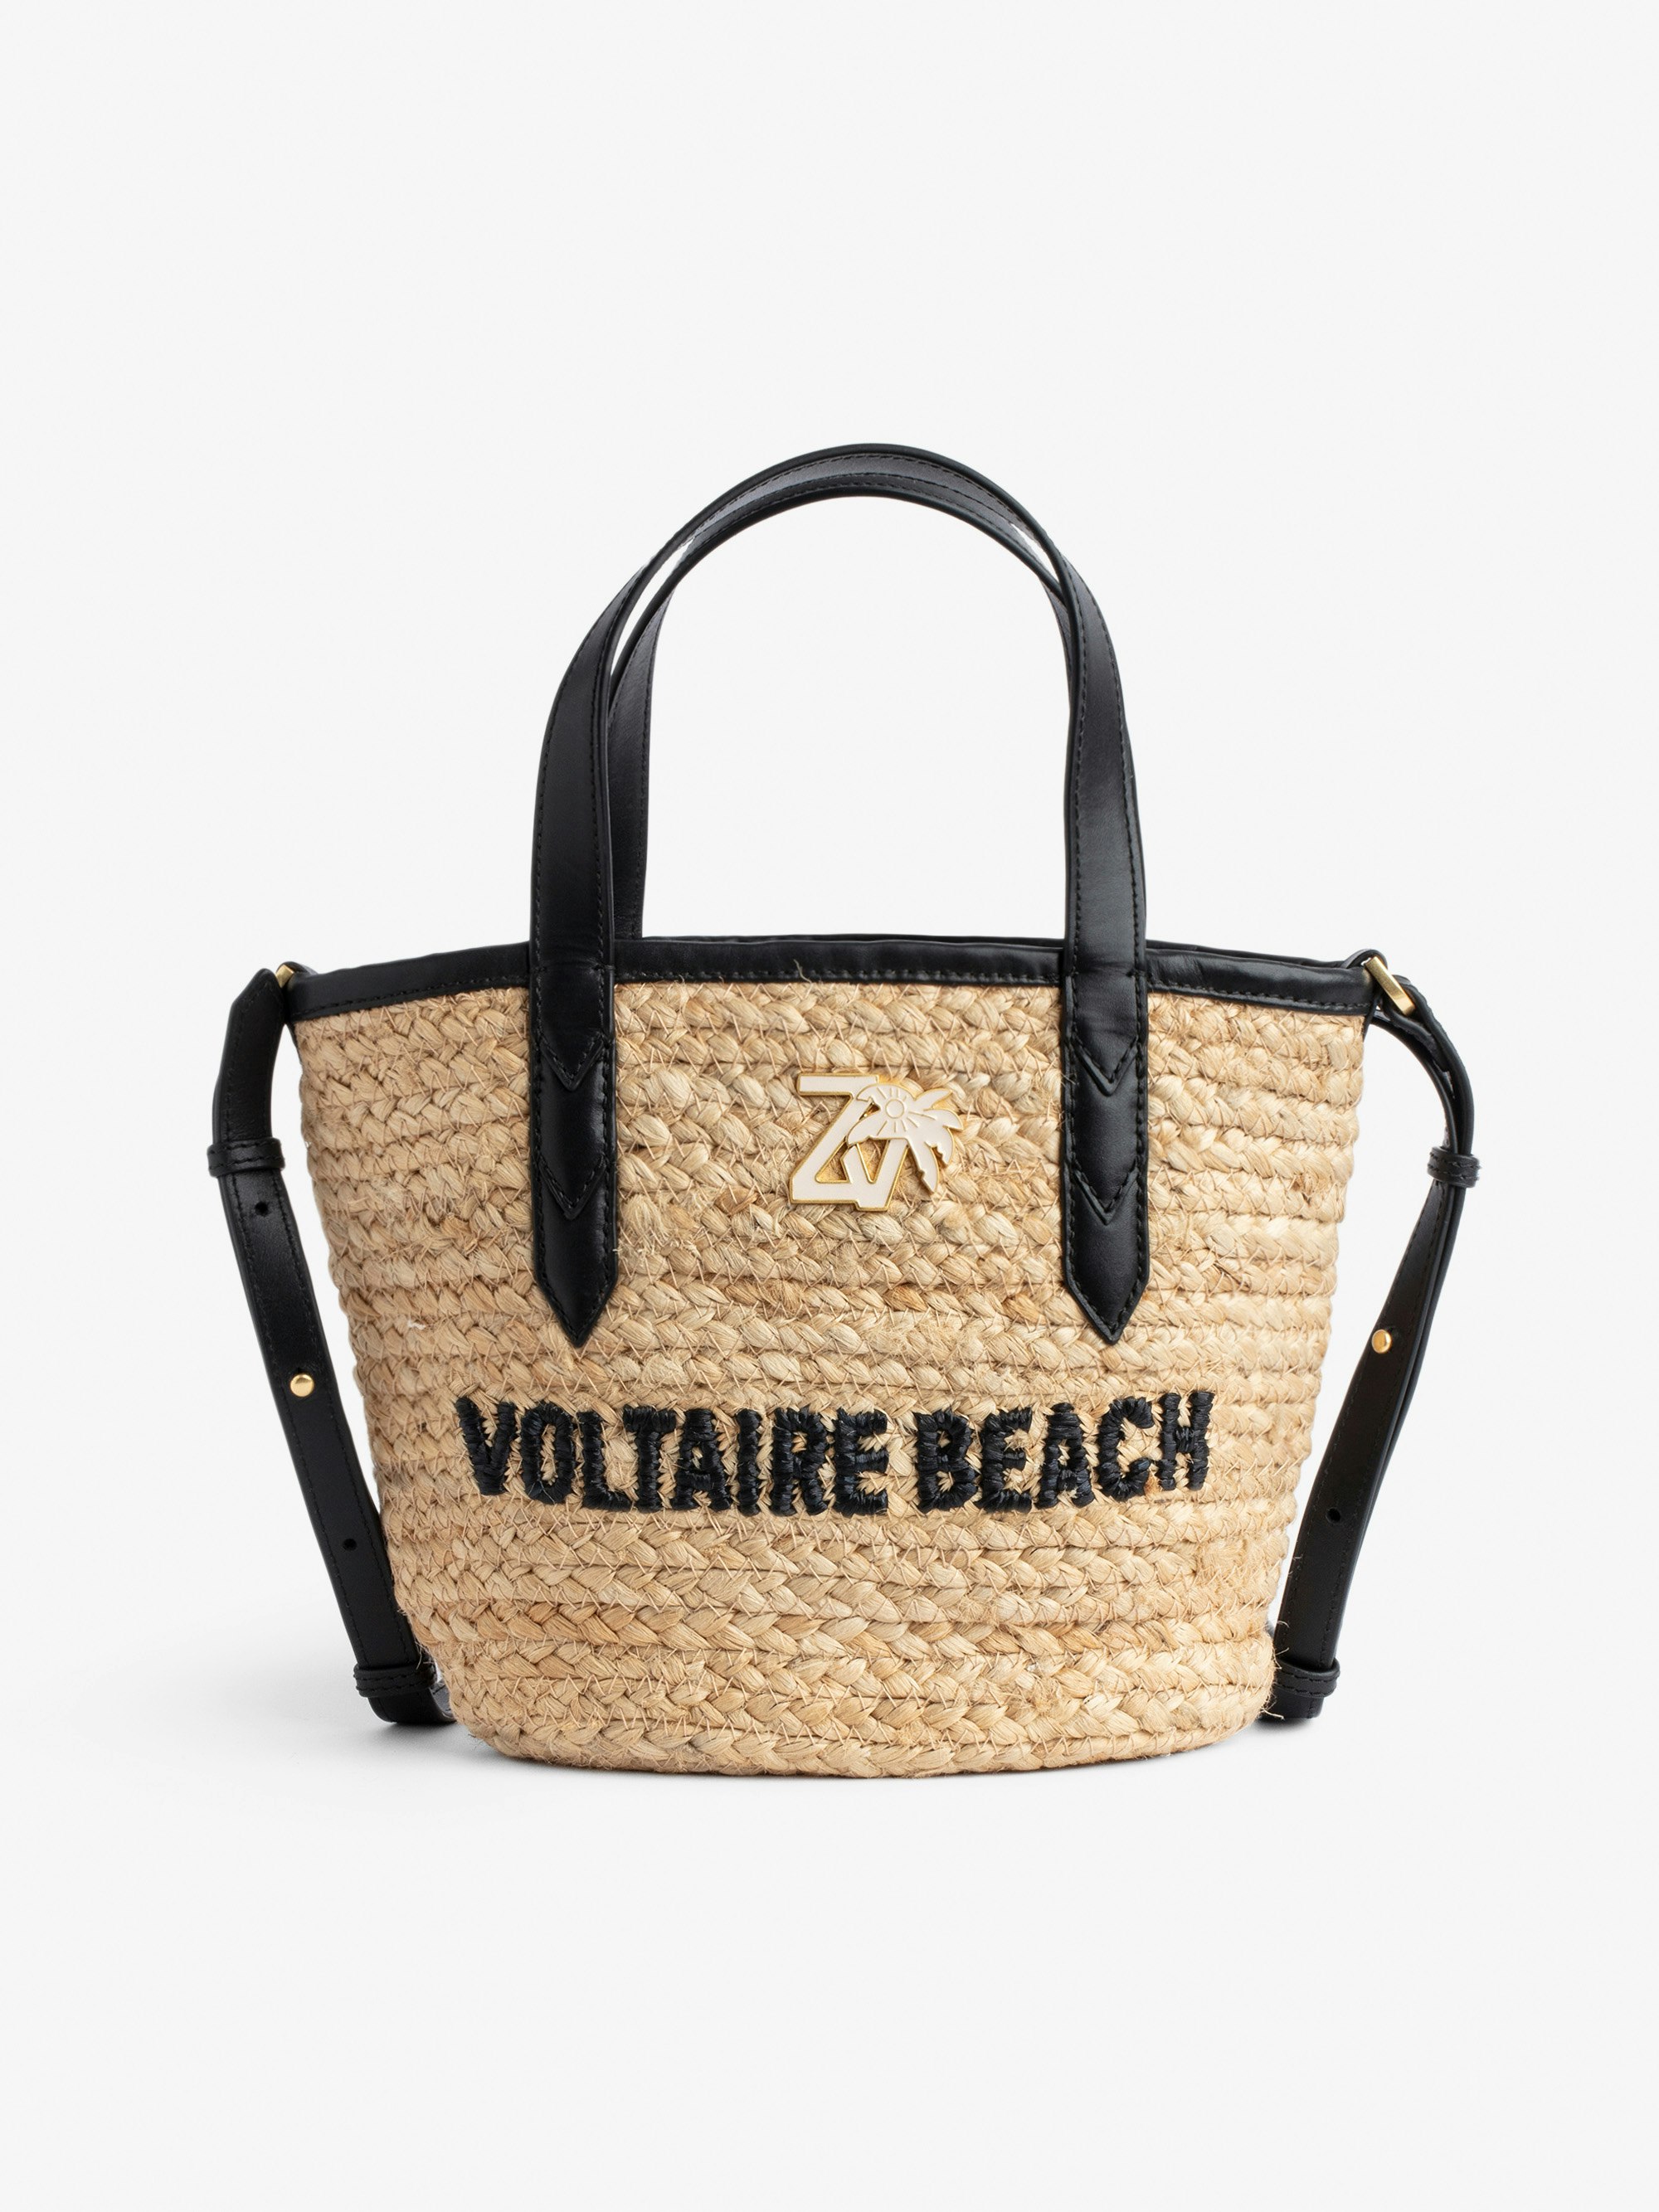 Sac Le Baby Beach Bag - Sac en paille à bandoulière en cuir noir, brodé "Voltaire Beach" et orné d'un charm ZV.